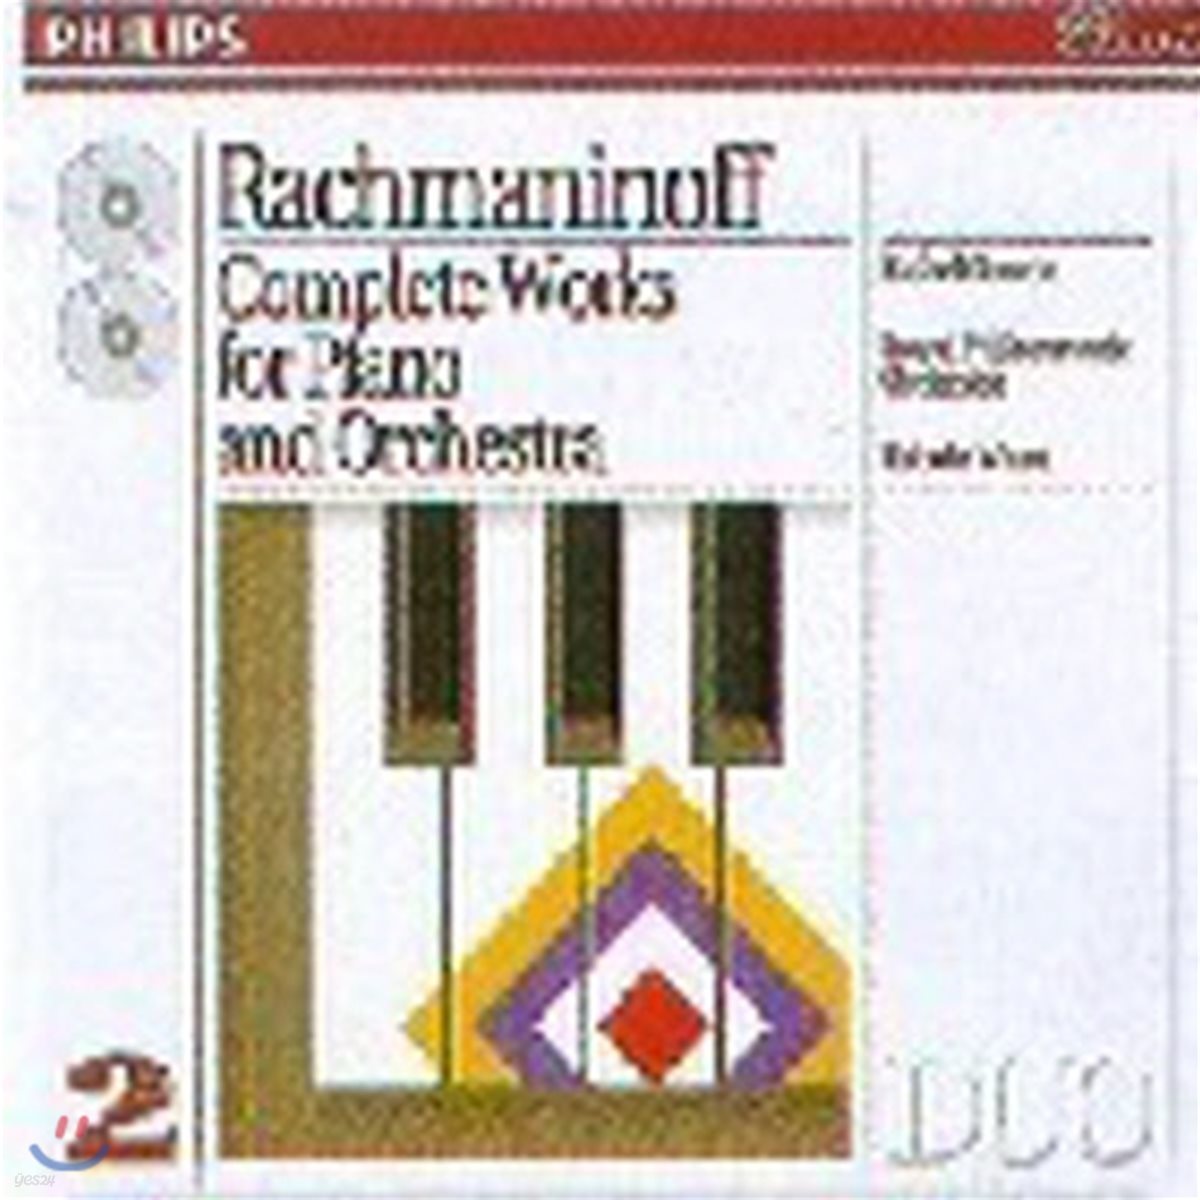 [중고] Edo de Waart, Rafael Orozco / Rachmaninoff : Complete Works For Piano And Orchestra (2CD/수입/4383262)